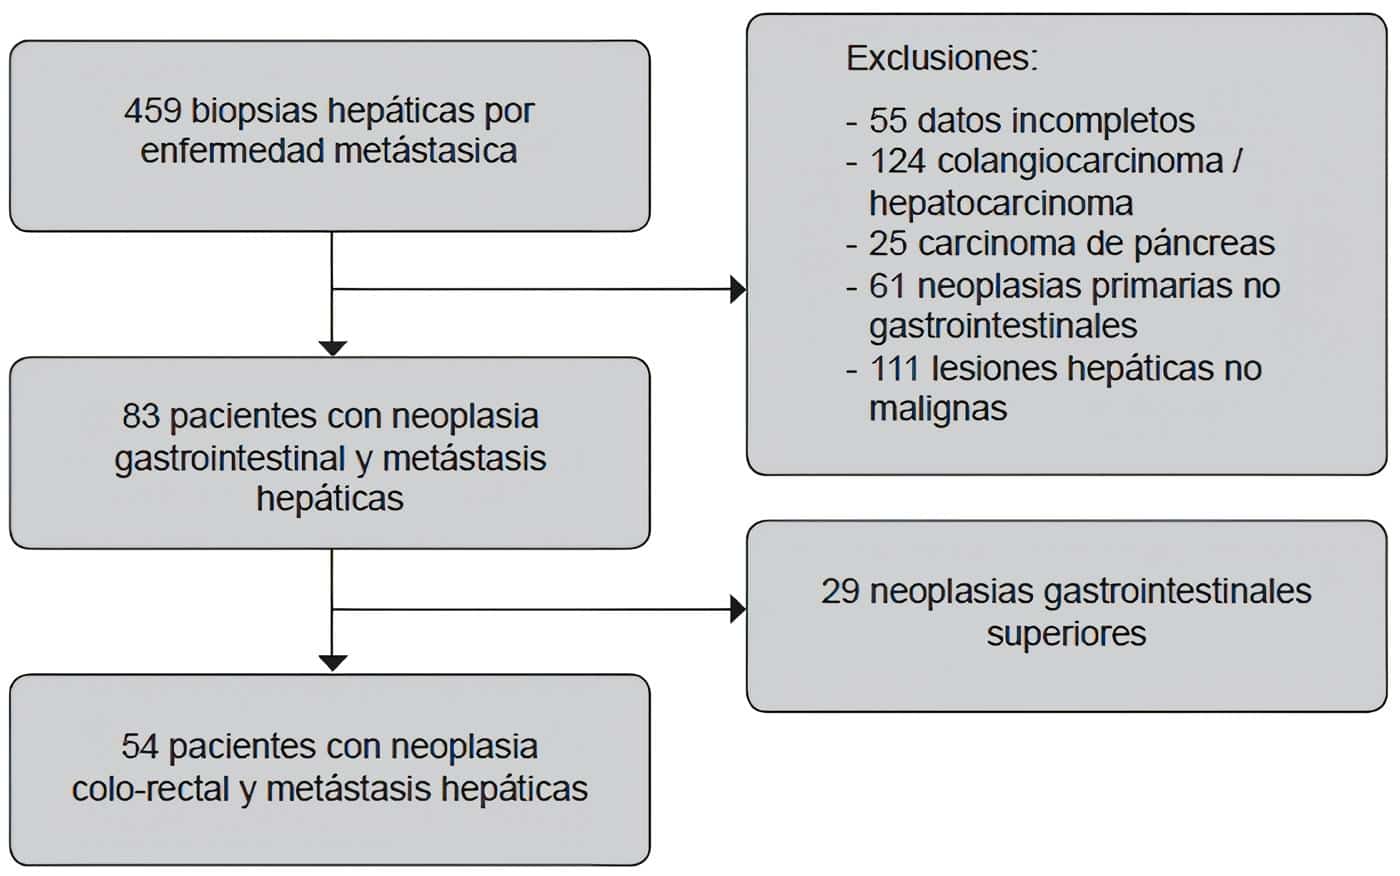 Biopsias hepáticas por enfermedad metástasica